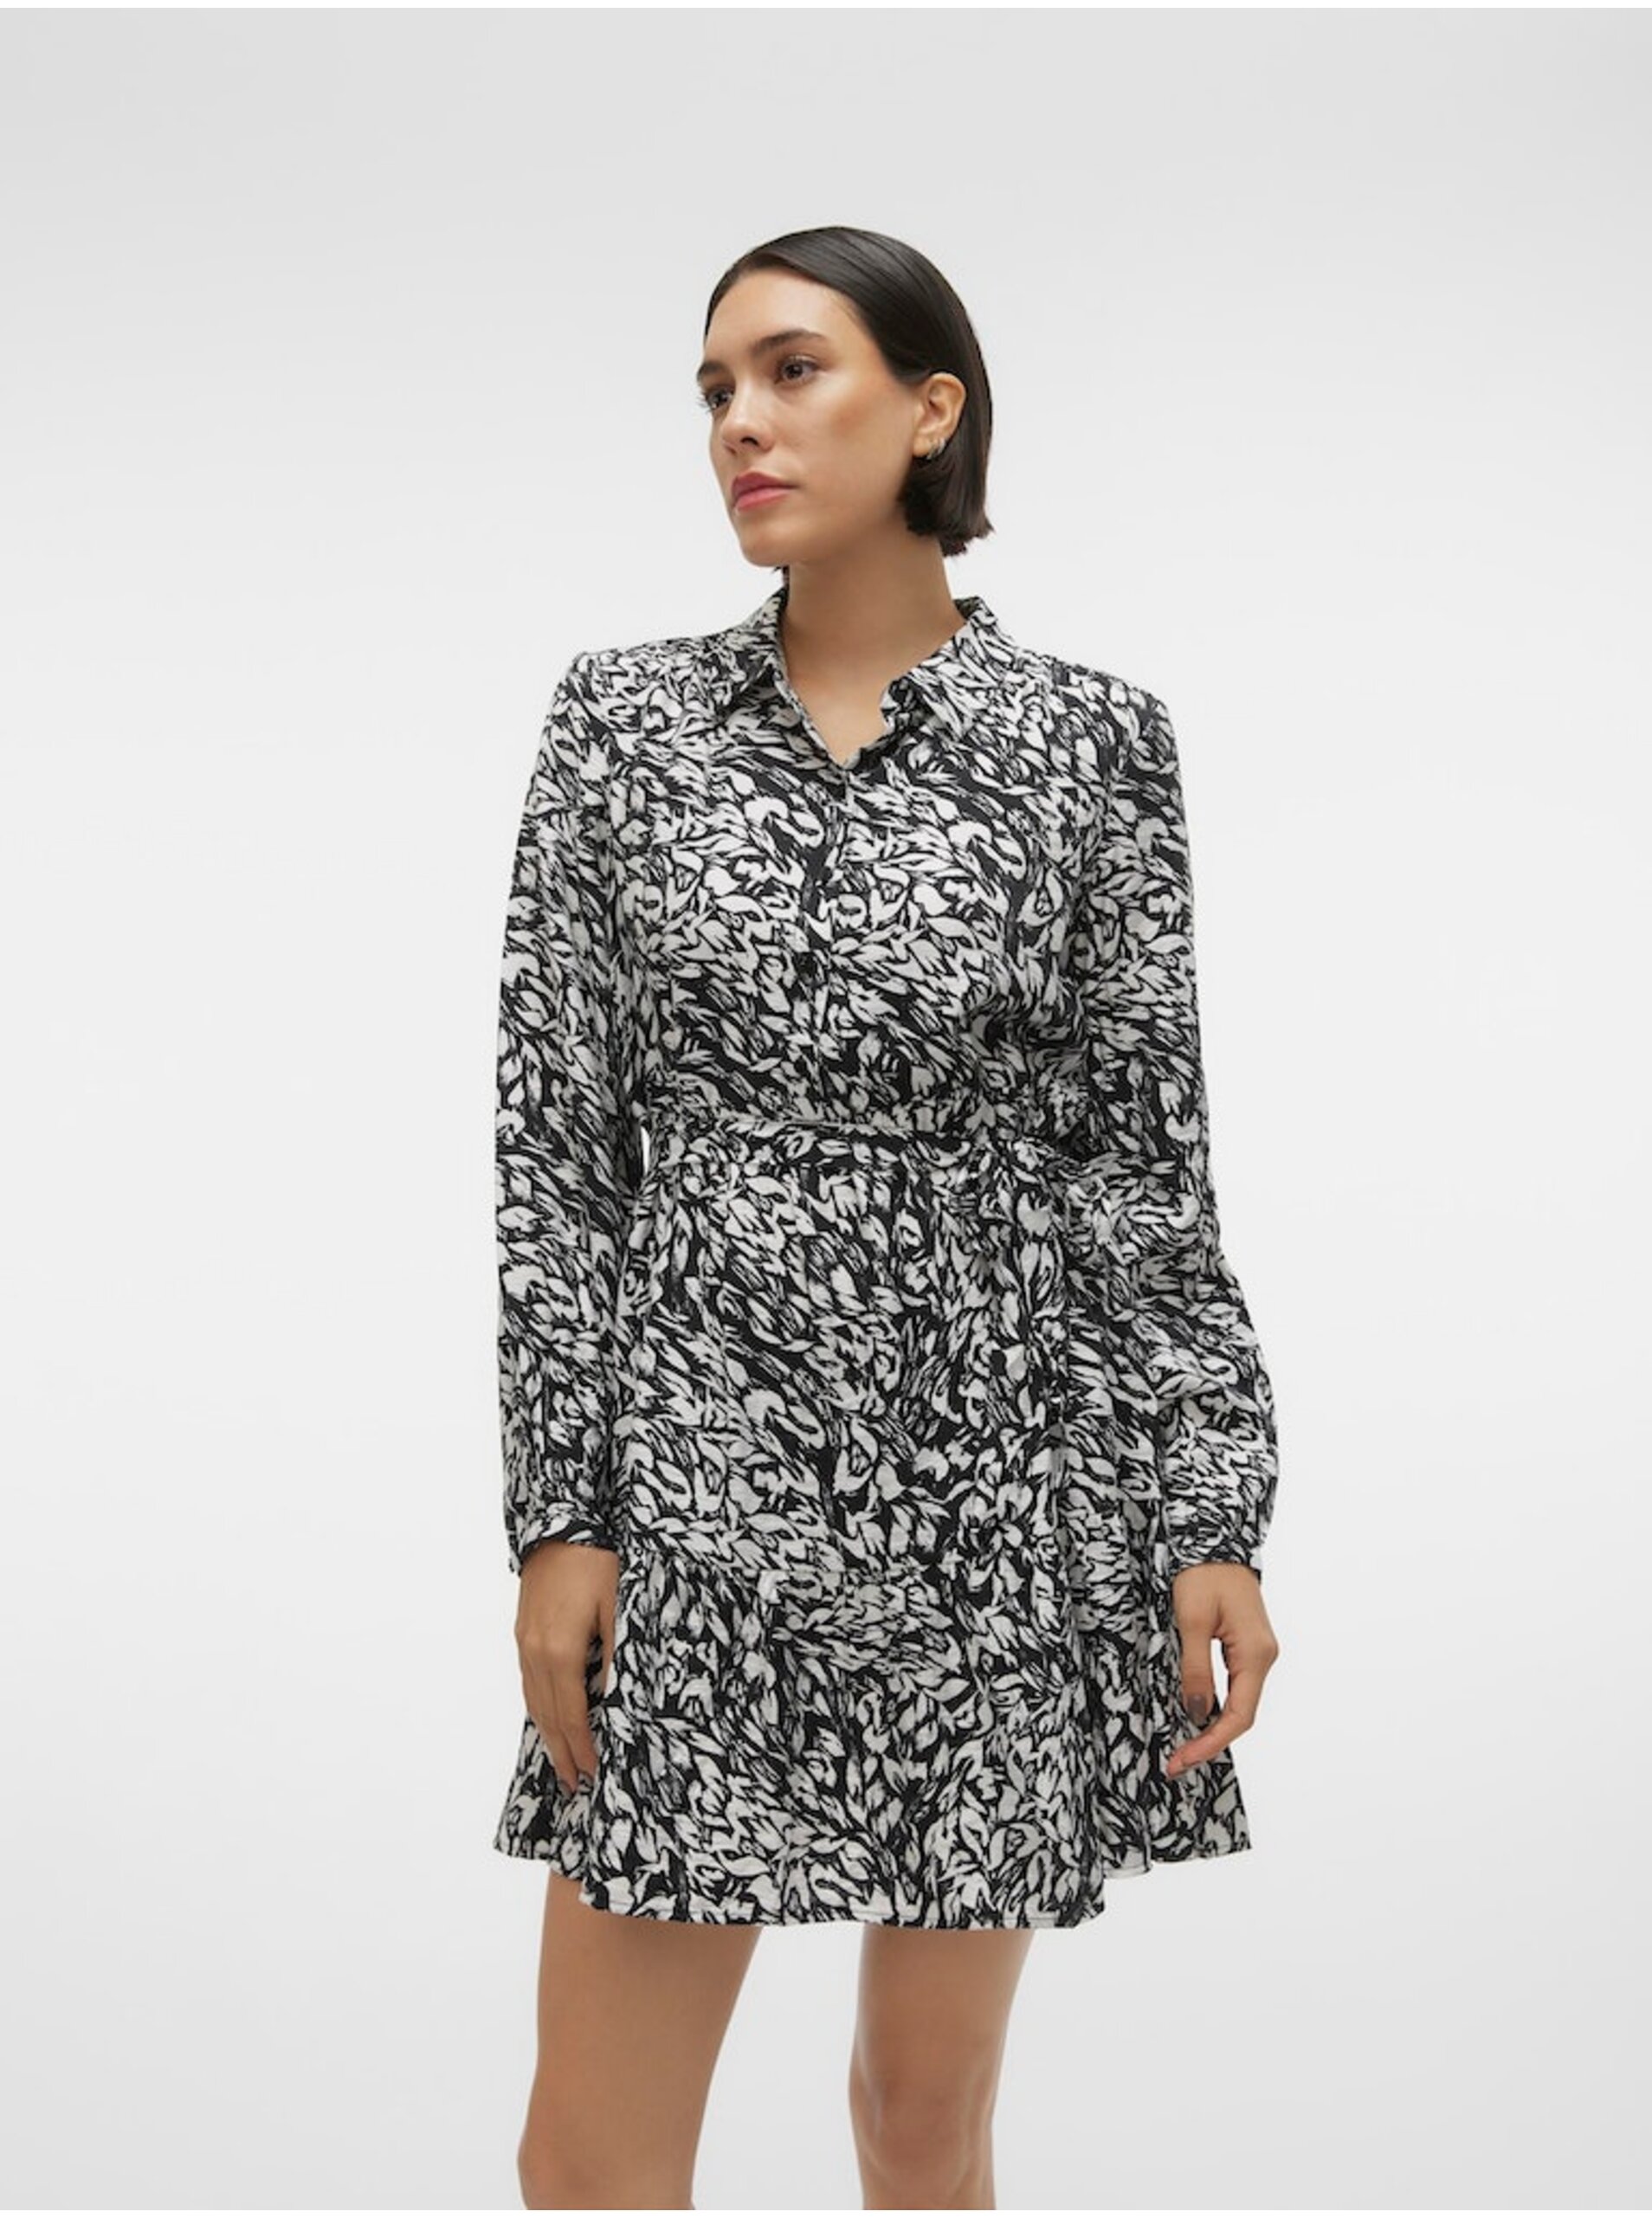 E-shop Bílo-černé dámské vzorované košilové šaty Vero Moda Debby